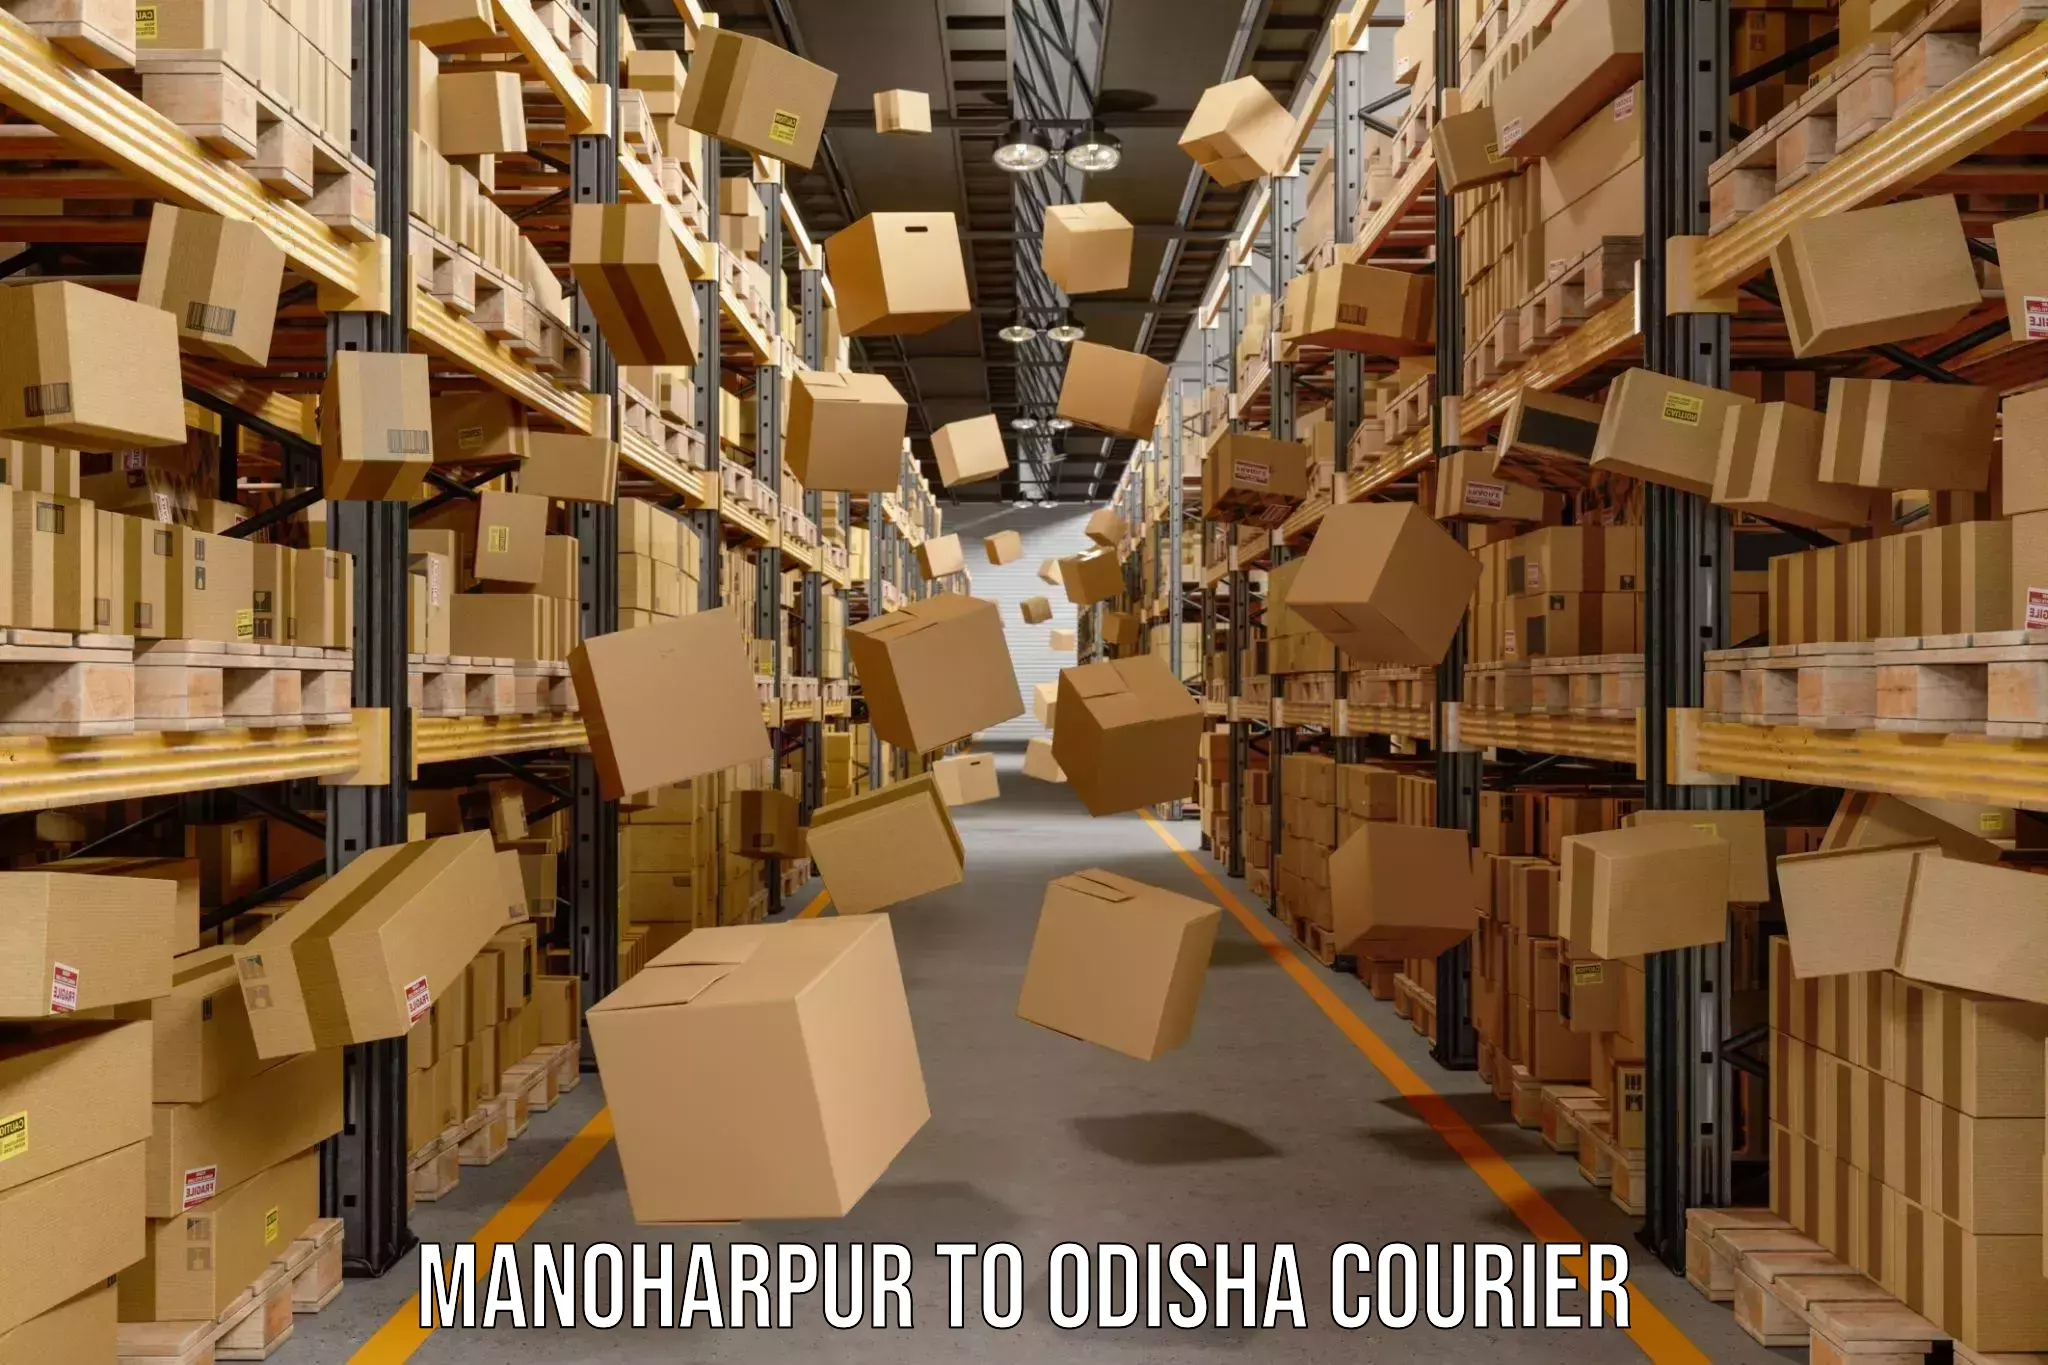 Premium courier solutions Manoharpur to Tikiri